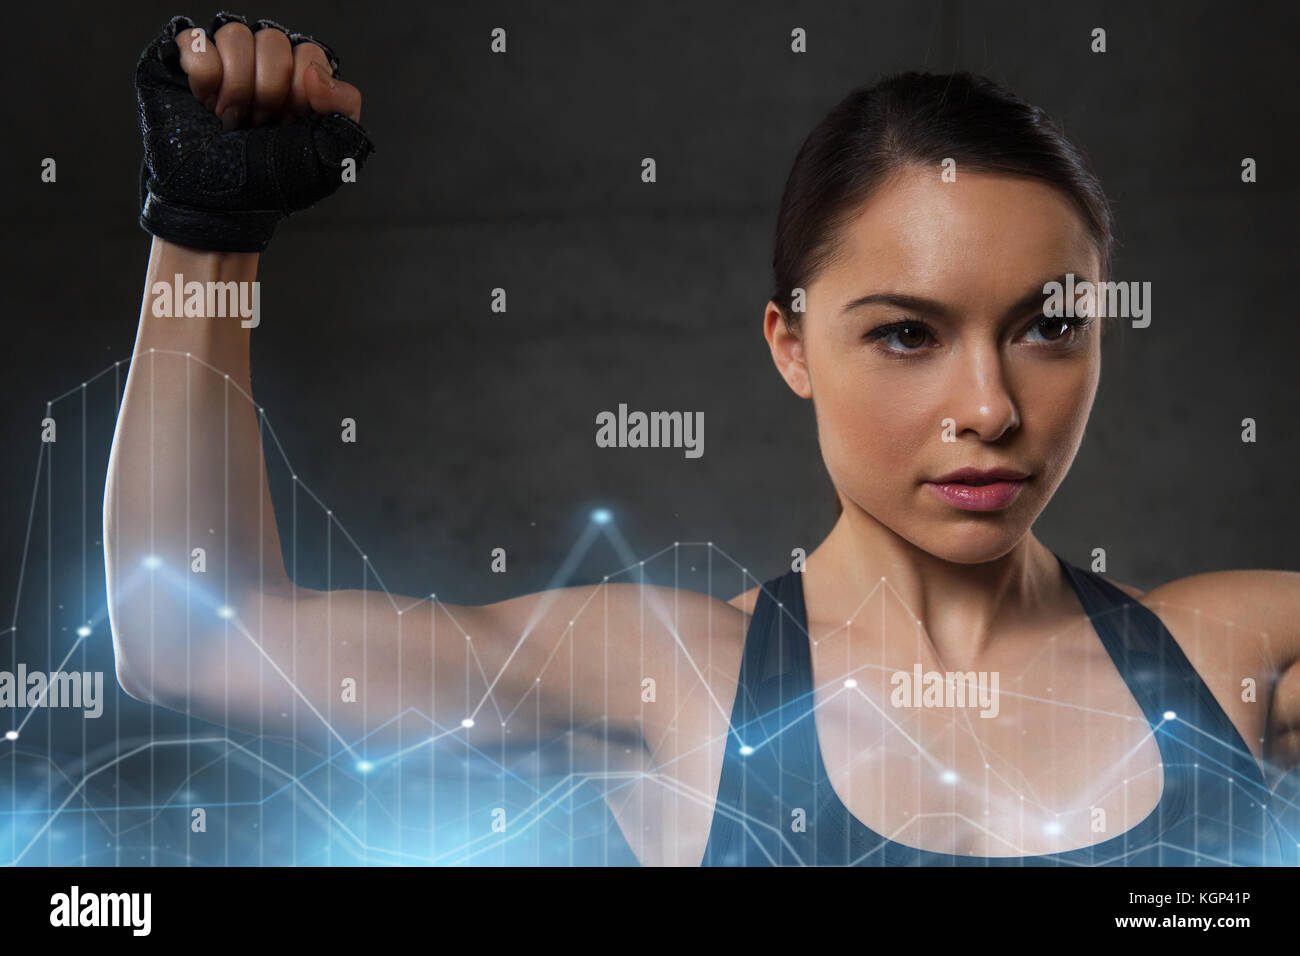 junge Frau, die Muskeln im Fitness-Studio Stockfoto